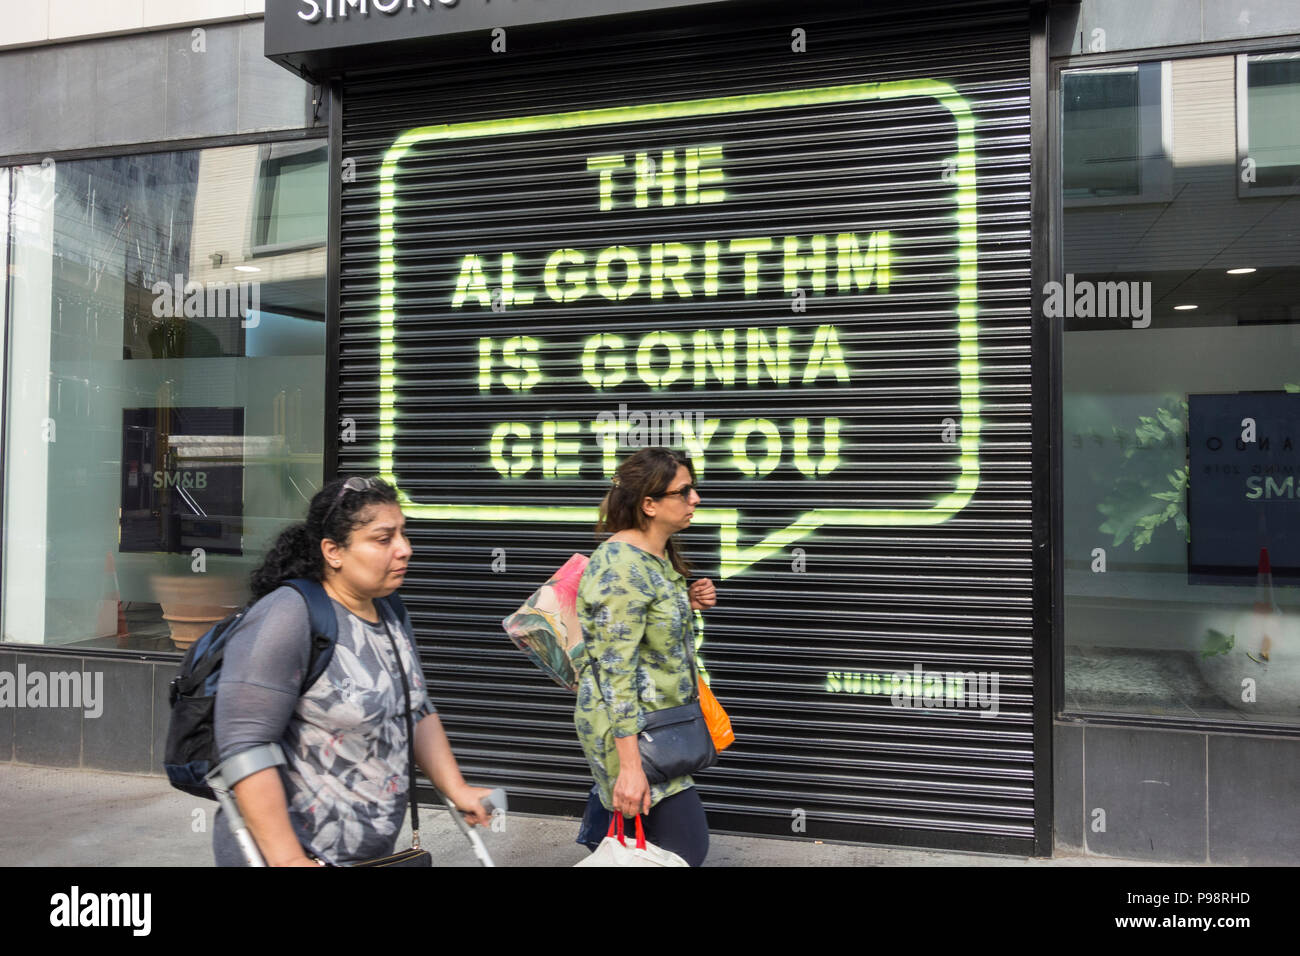 La gente que pasa por el Algoritmo te llevará por Subdude, frente a la sede de Rathbone Square en Facebook, en Londres, Inglaterra, Reino Unido Foto de stock